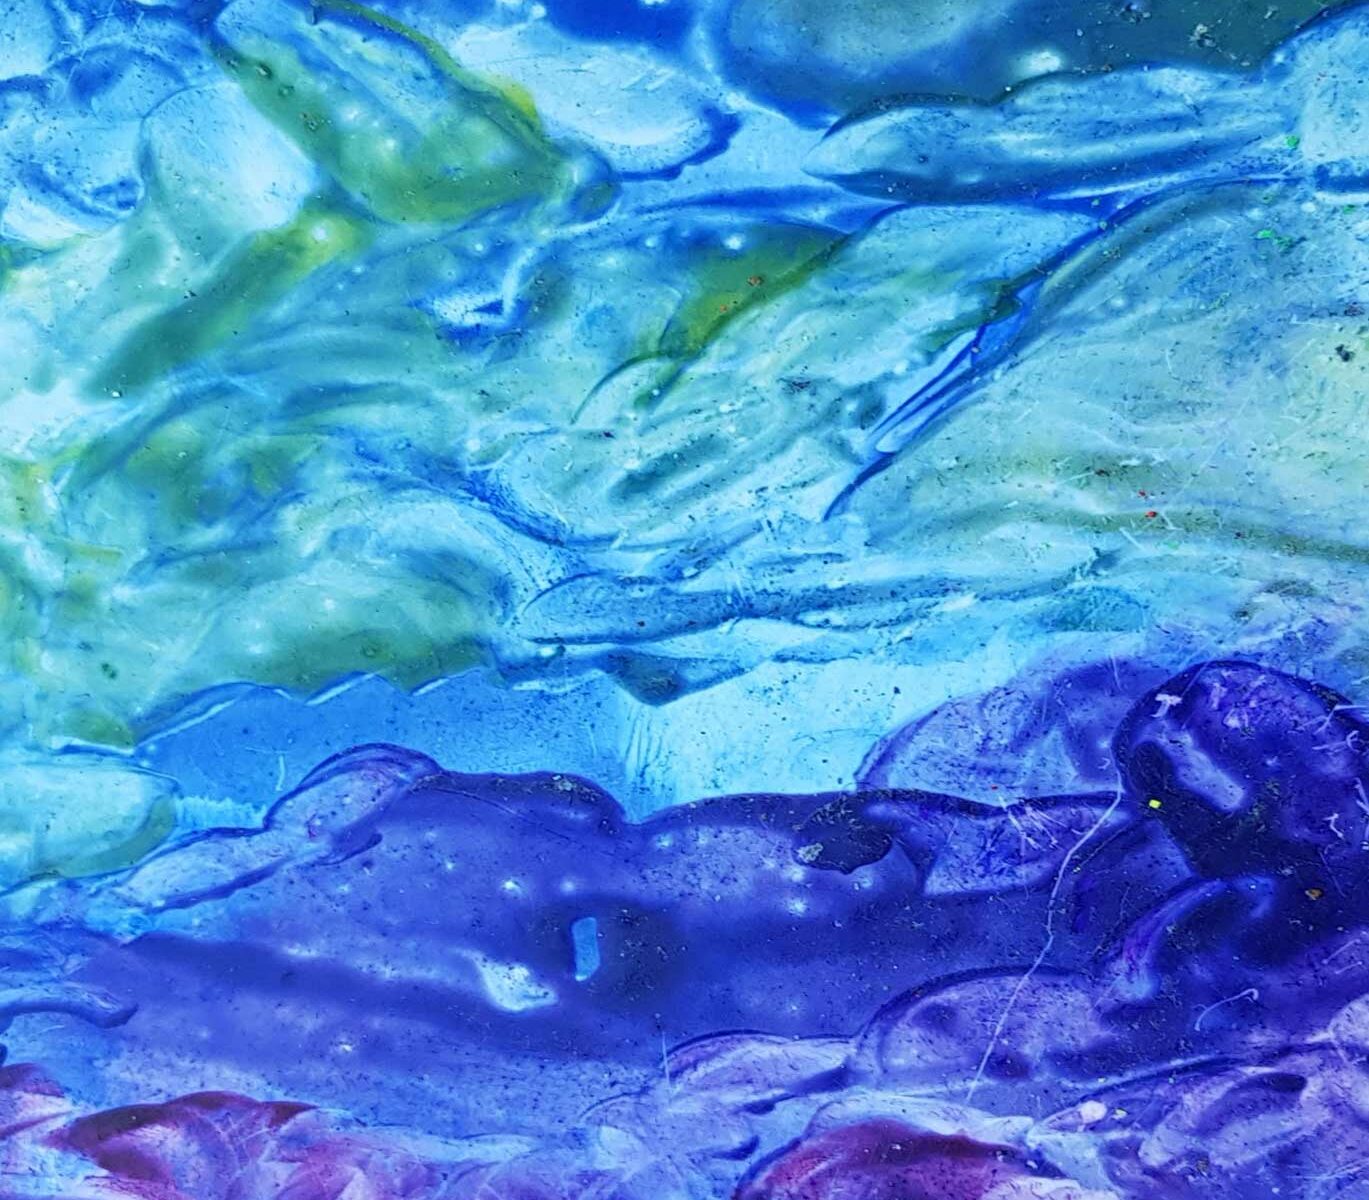 nächtliche Traumlandschaft, 2014, Ölpastell auf Pappe